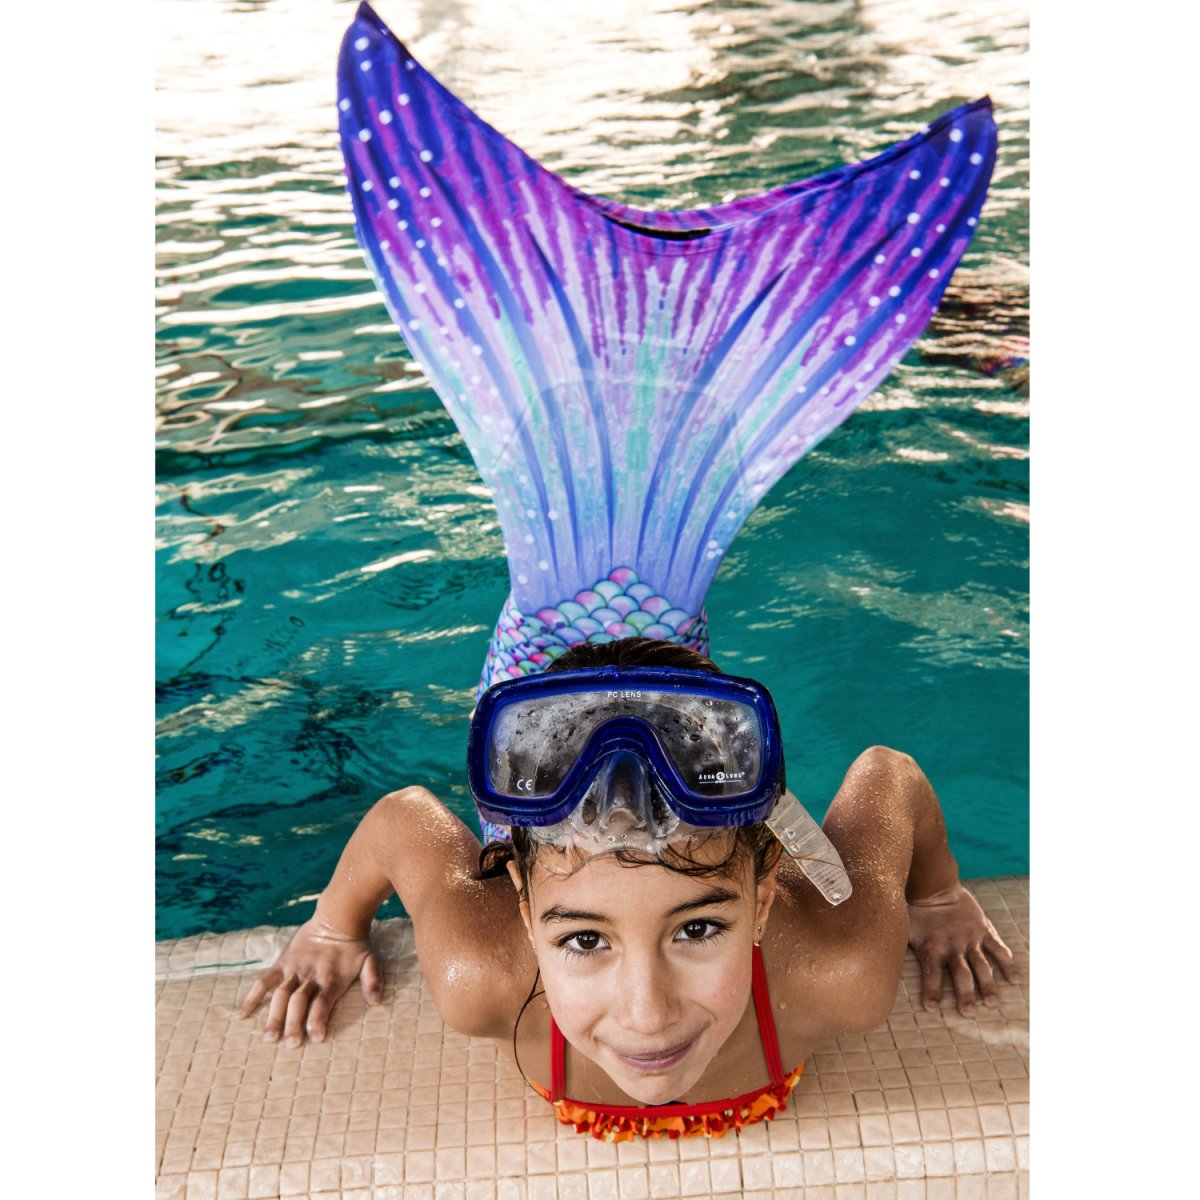 Mermaid swimming courses 2022 - Mermaid swimming courses 2022